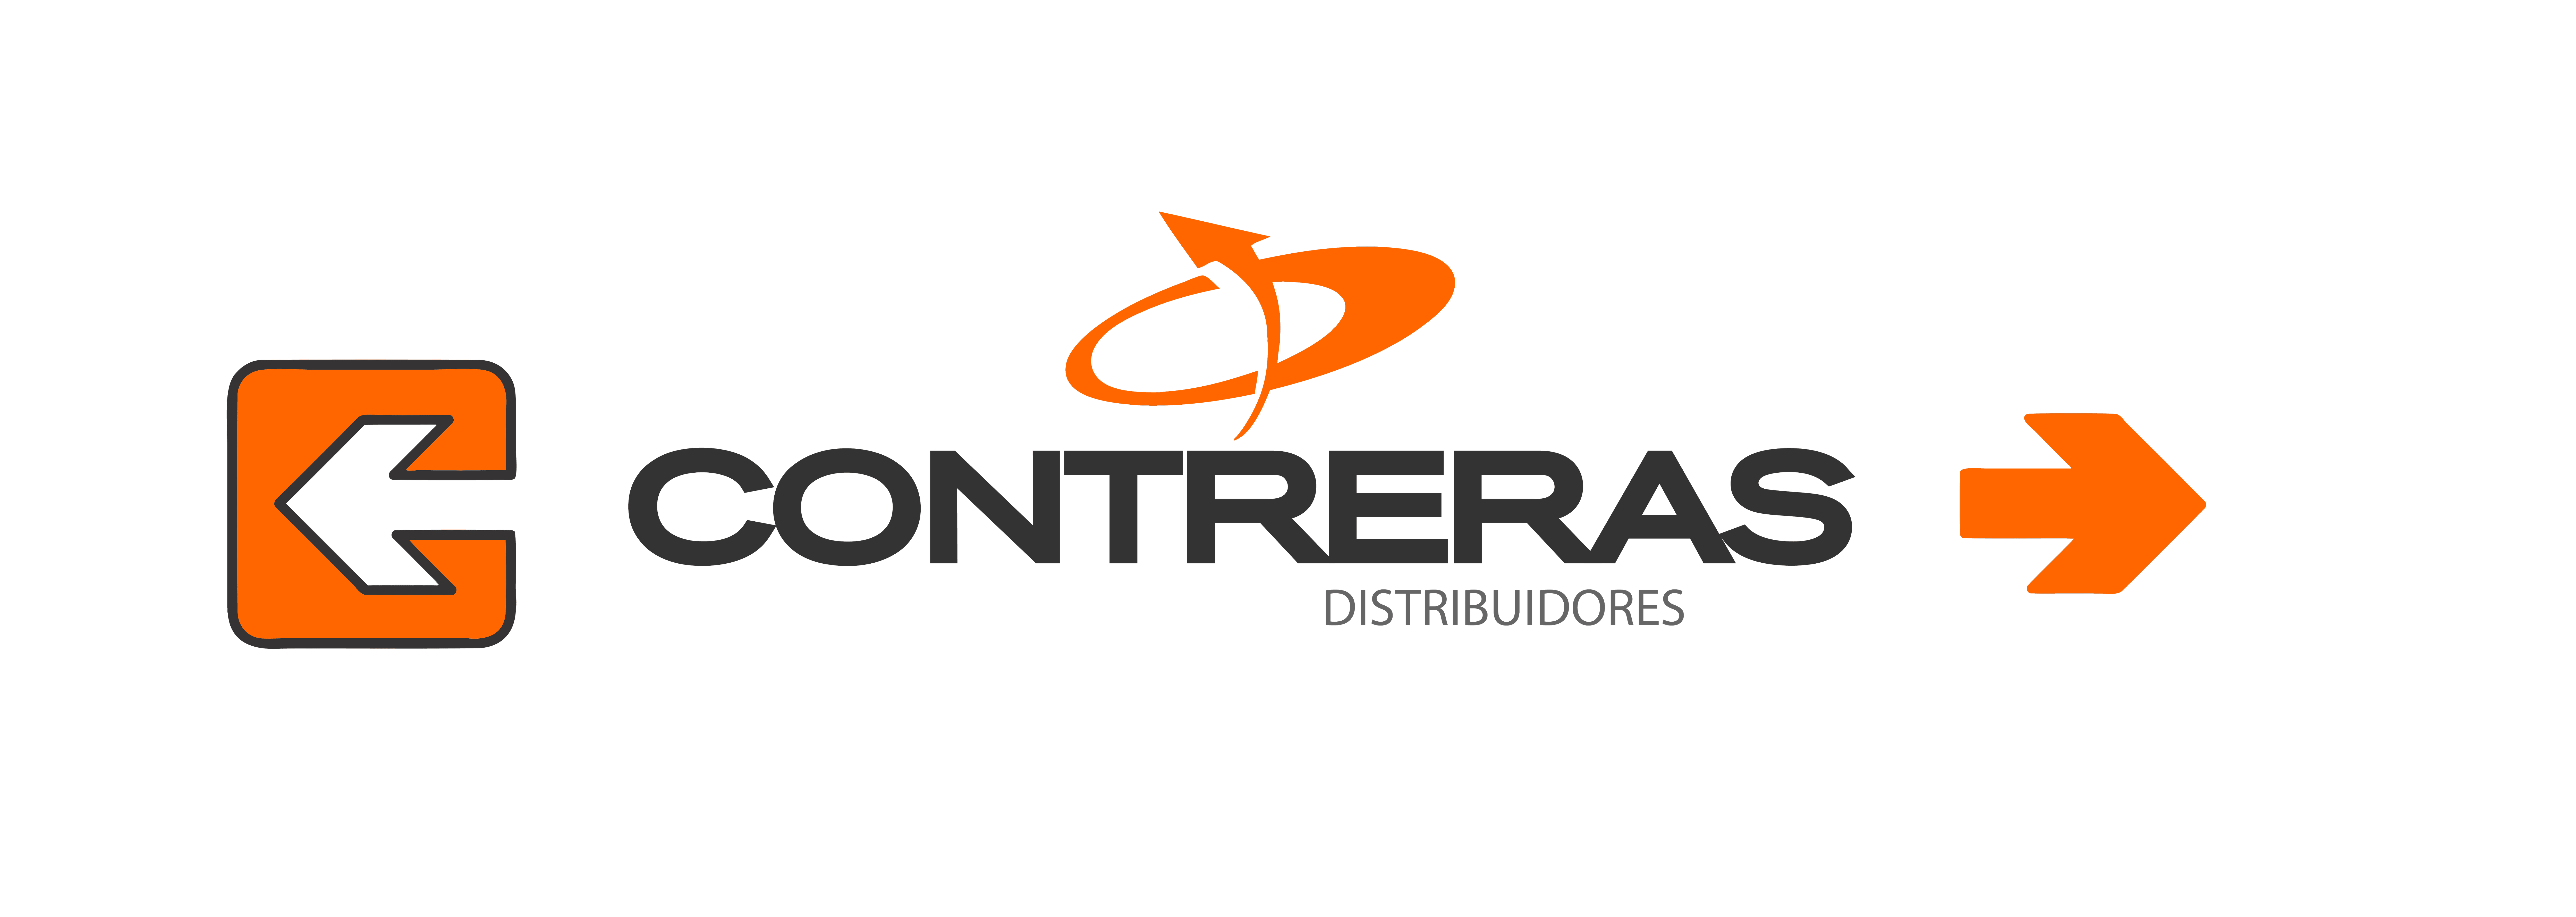 Contreras Distribuidores